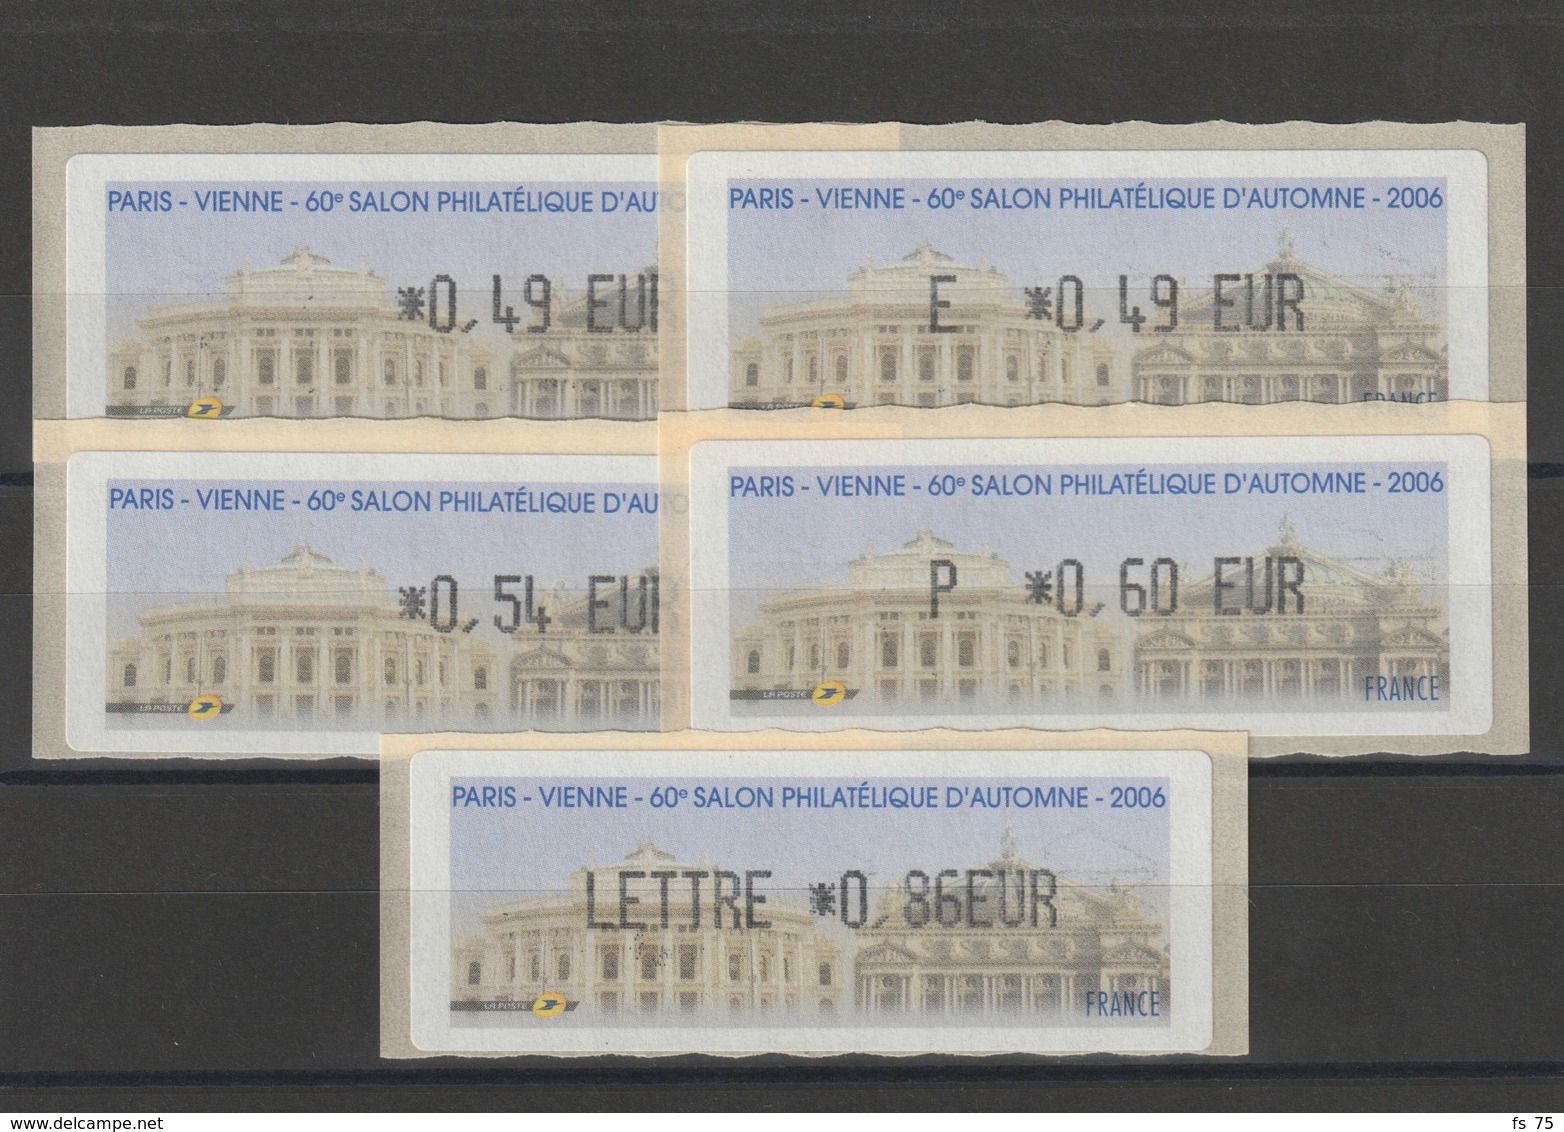 FRANCE - 5 VIGNETTES 0,49€, E. 0,49€, 0,54€, 0,60€ ET 0,86€ - PARIS - VIENNE - 60EME SALON PHILATELIQUE D'AUTOMNE 2006 - 1999-2009 Geïllustreerde Frankeervignetten